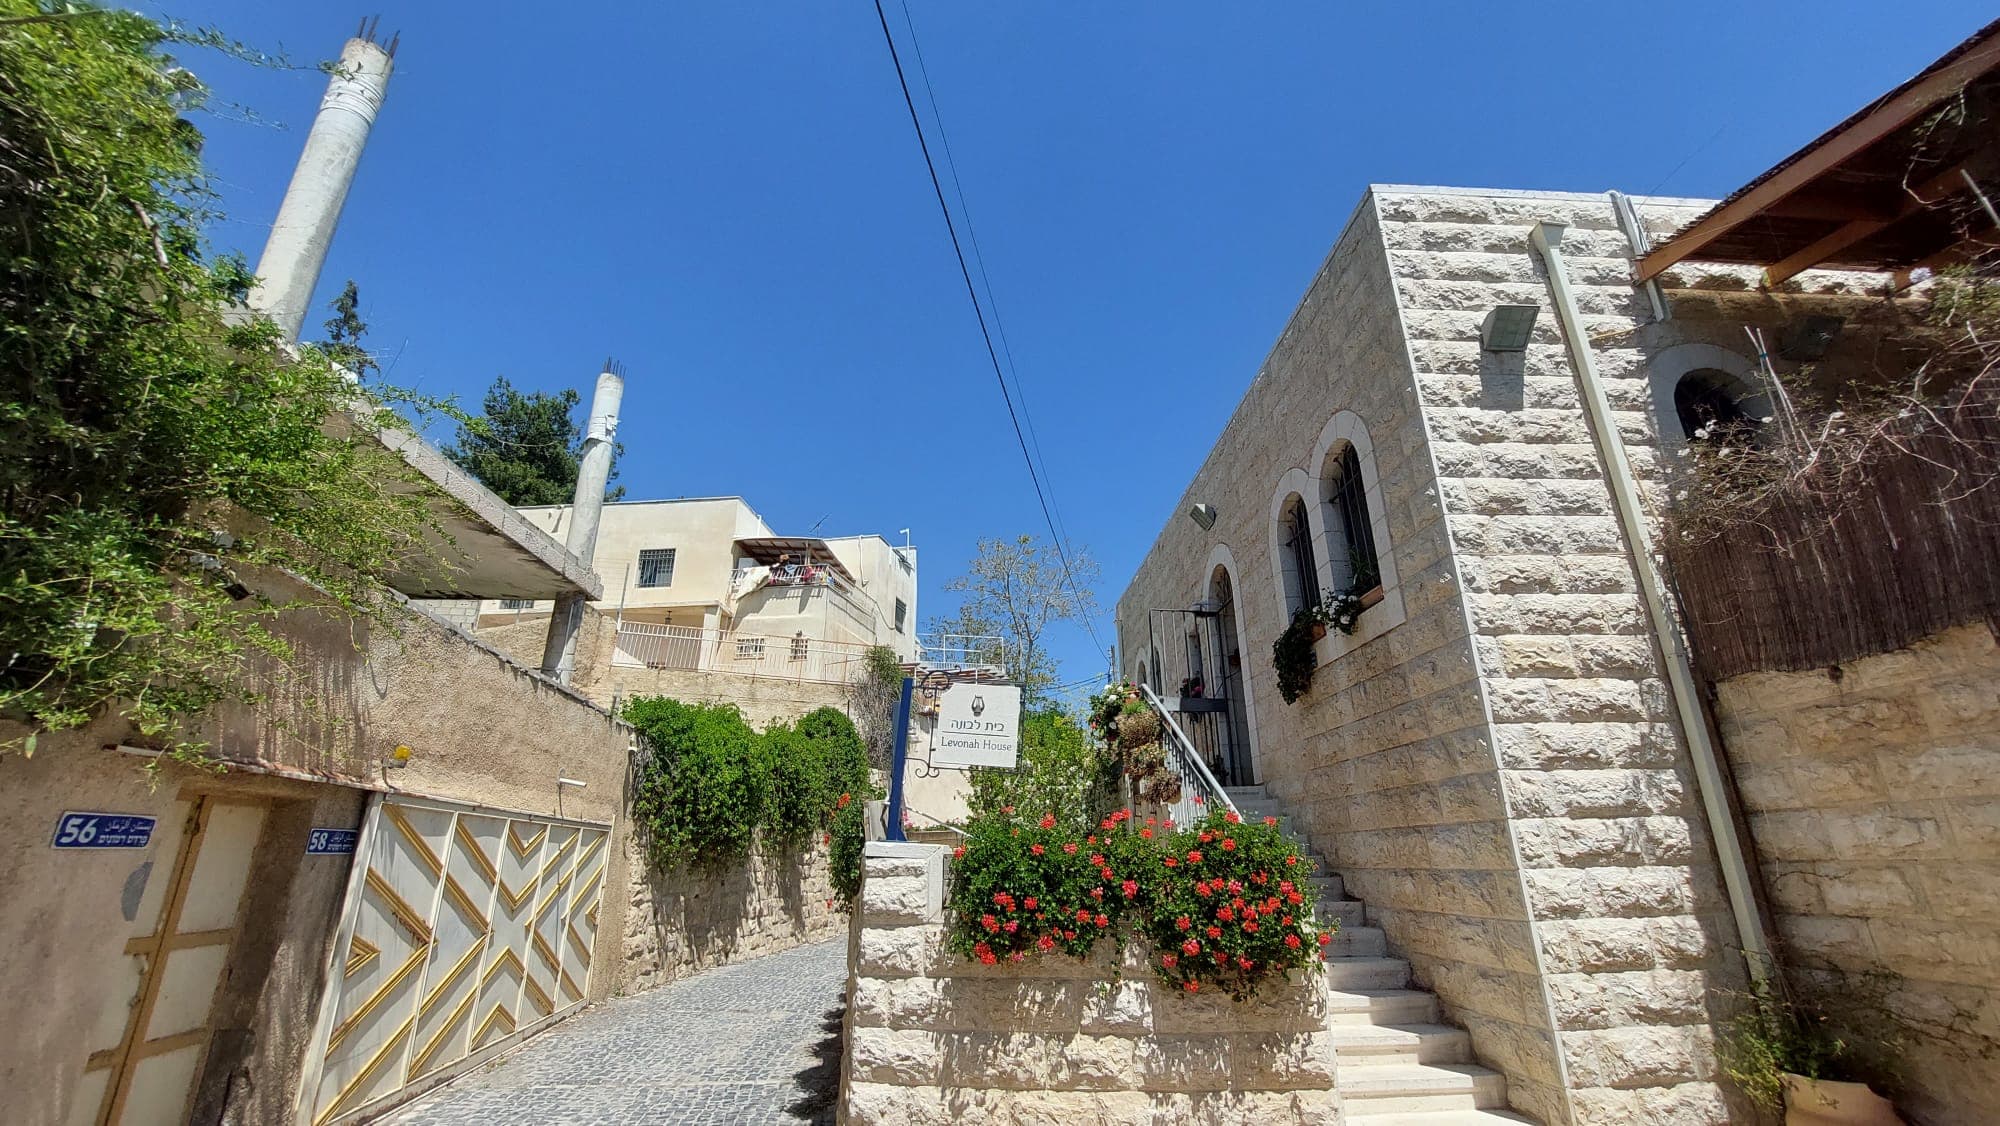 בית פלסטיני שבנייתו נעצרה מימין, ובית יהודי שעבר שיפוץ והרחבה משמאל, בוואיד רבבה שגובלת בגיא בן הינום. אפריל 2022 (צילום: עומר שרביט)